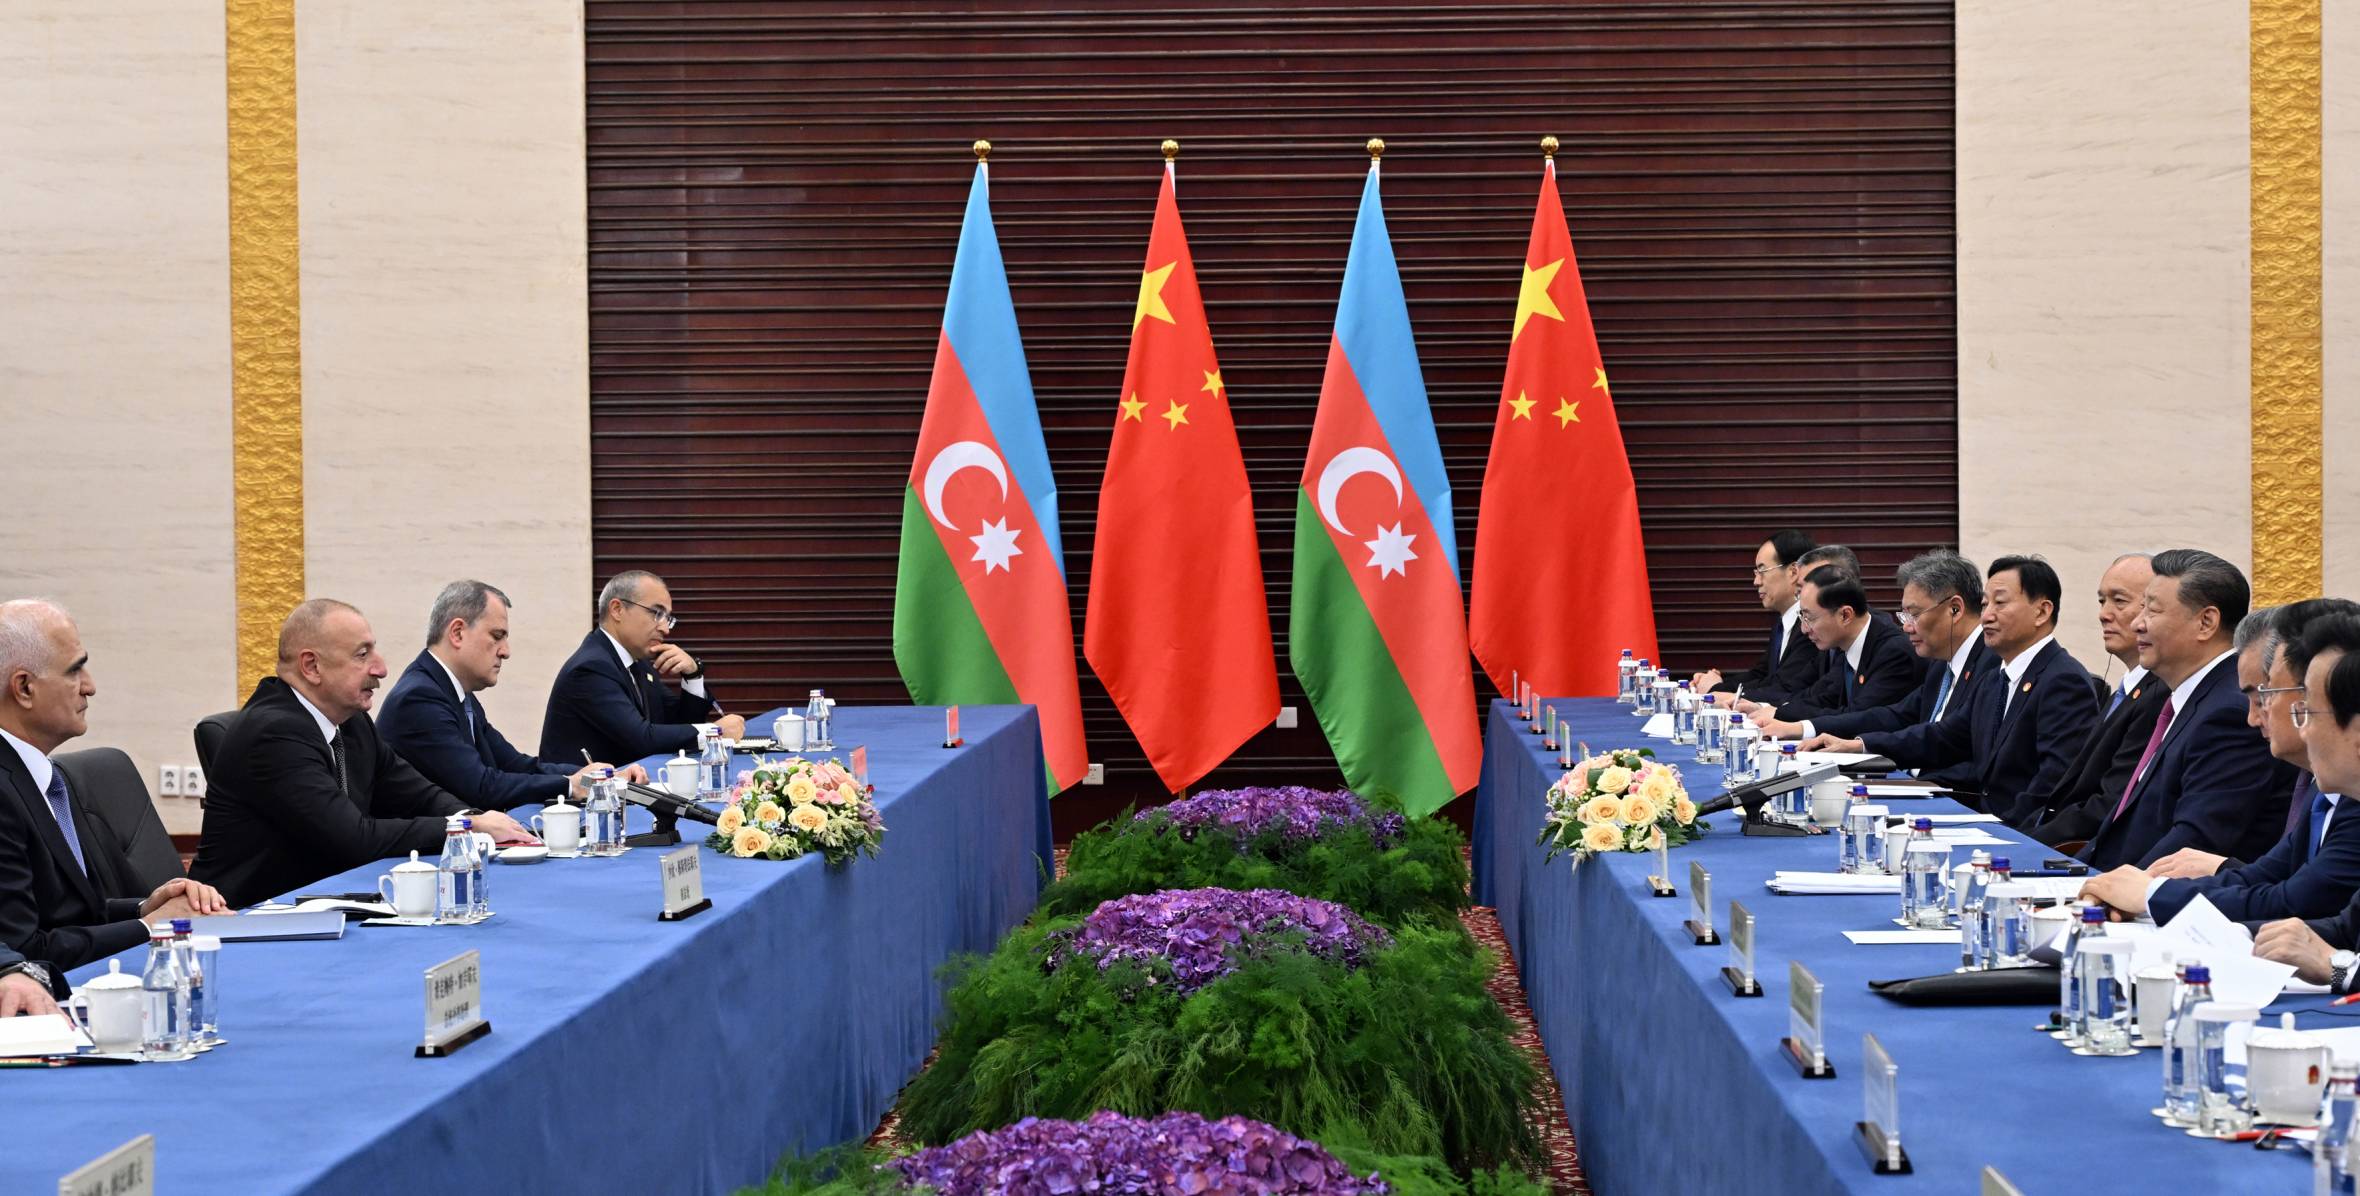 В Астане принята «Совместная декларация об установлении стратегического партнерства между Азербайджанской Республикой и Китайской Народной Республикой»